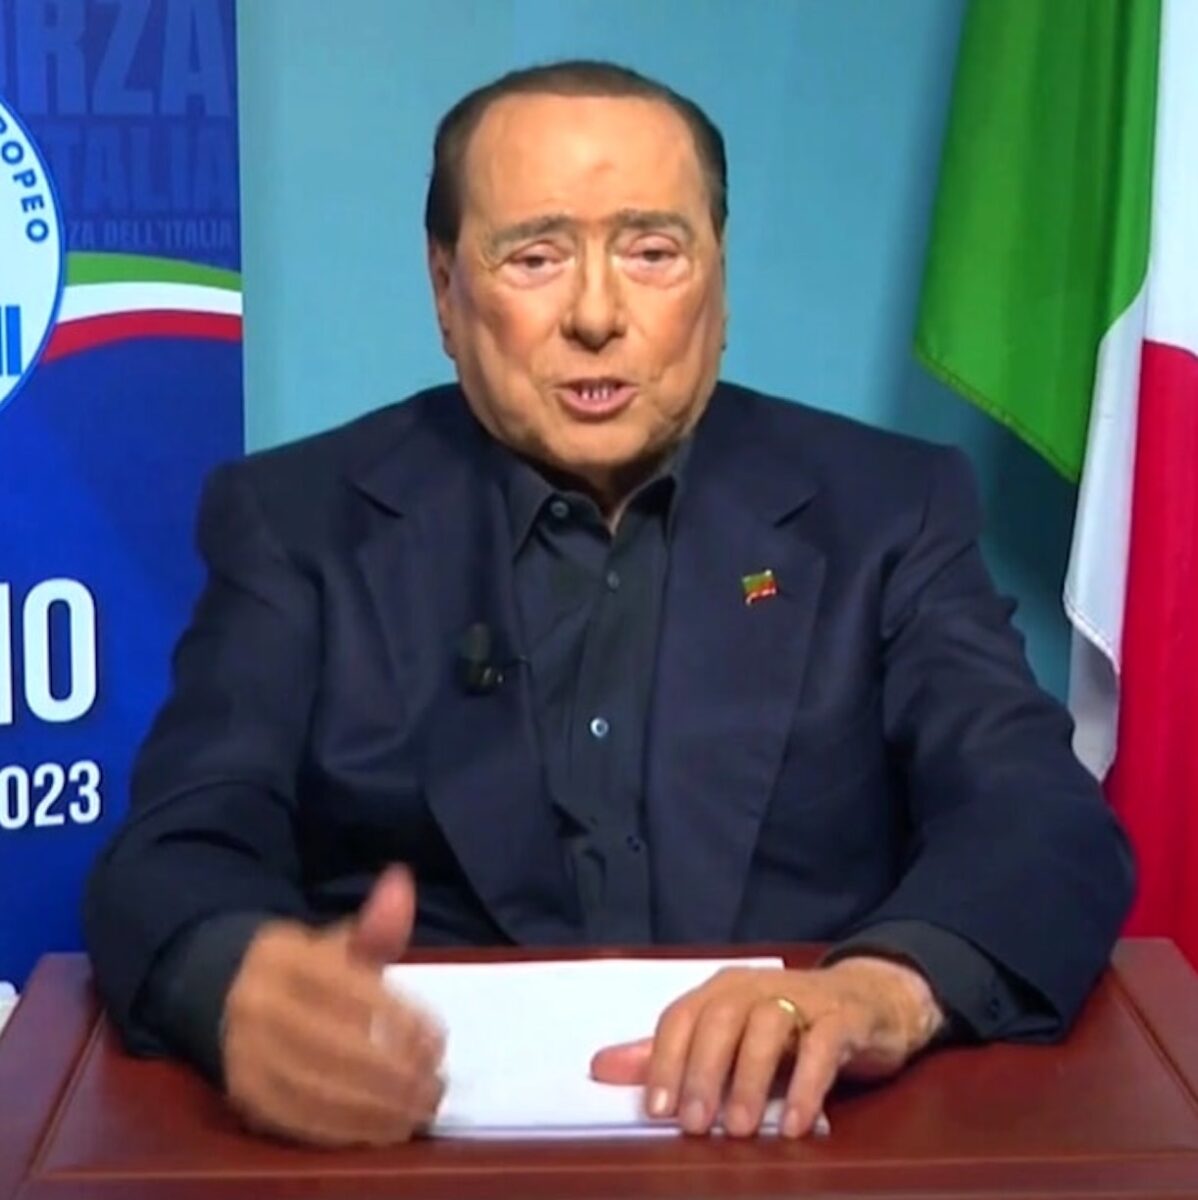 Silvio Berlusconi ha visto la finale di Champions League